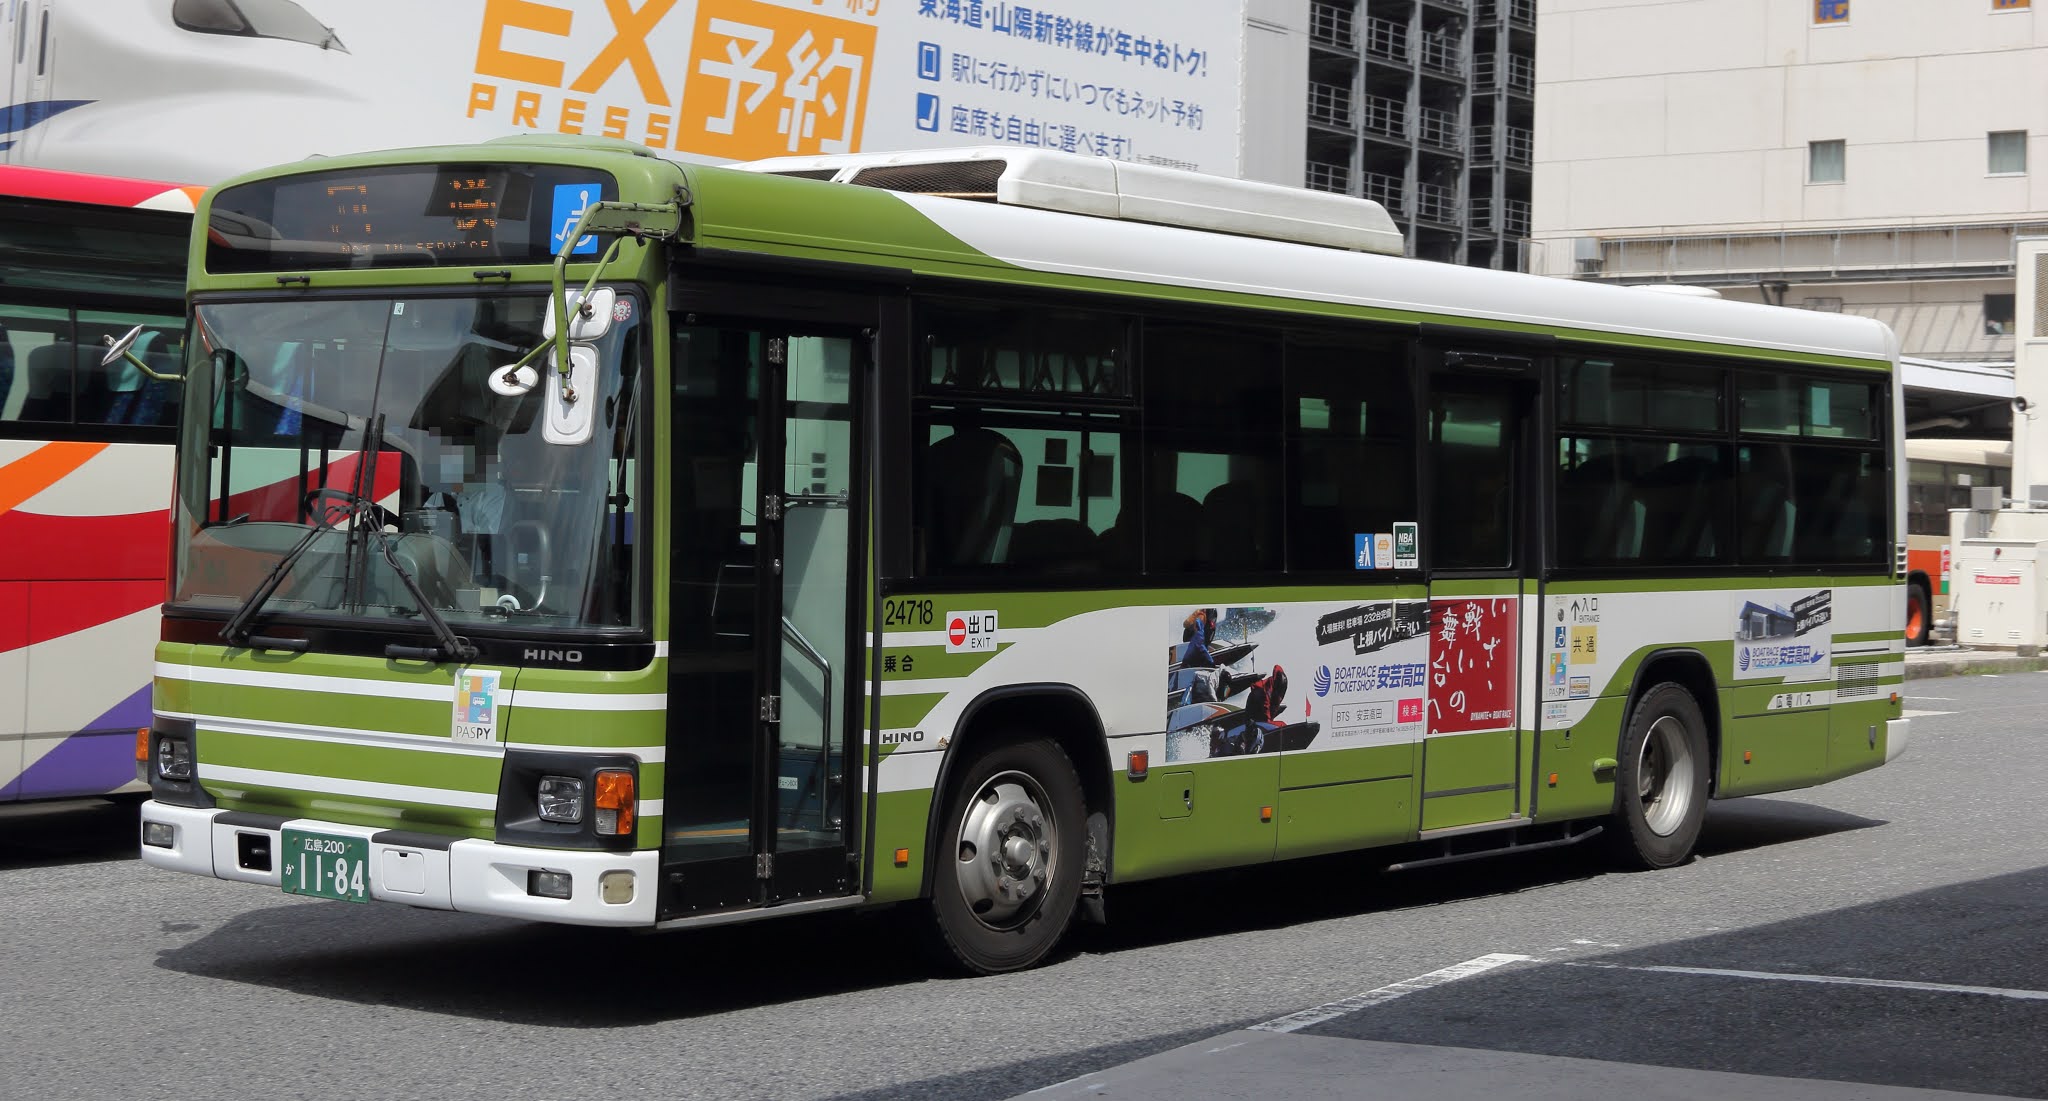 広島のバス 広電バス 広島0か1184